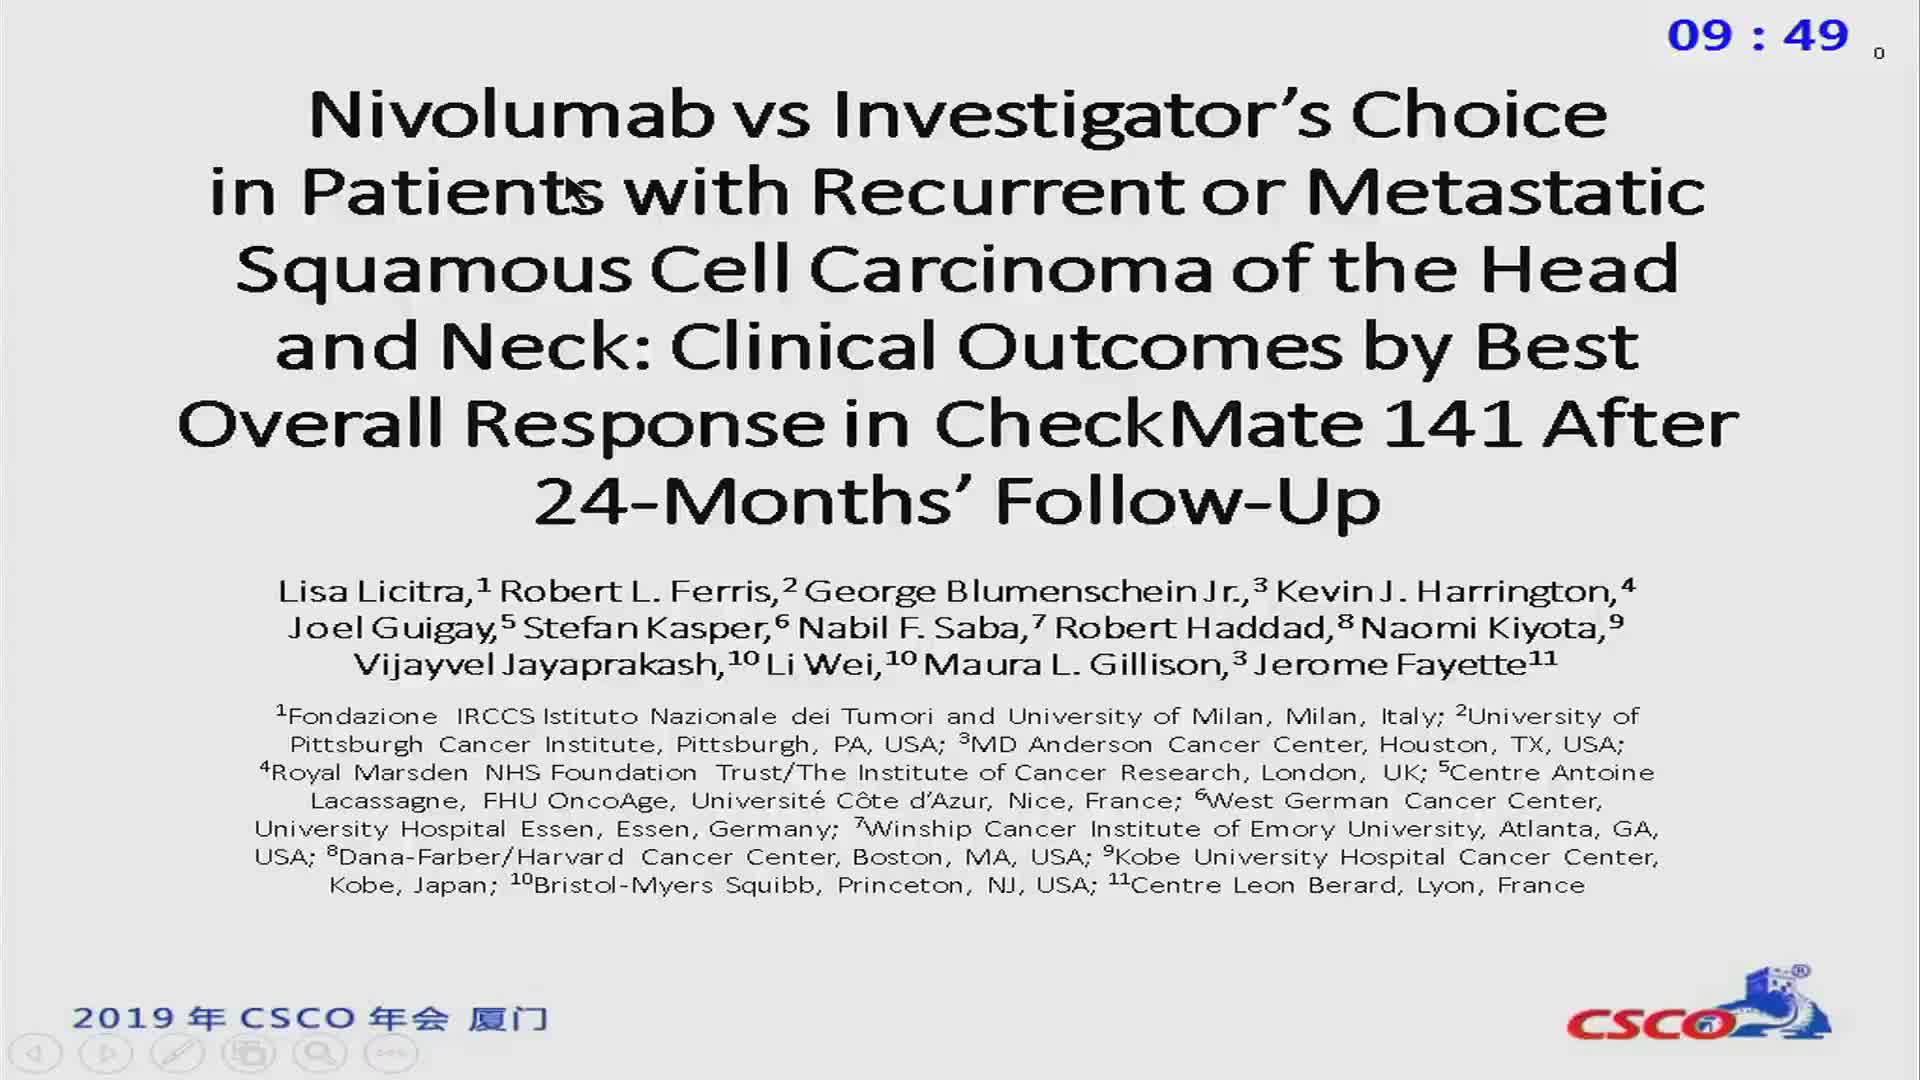 新数据—Nivolumab vs Investigator’s Choice (IC) in Patients with Recurrent or Metastatic (R/M) Squamous Cell Carcinoma of the Head and Neck (SCCHN): Clinical Outcomes by Best Overall Response (BOR) in CheckMate 141 After 24-Months’ Follow-Up